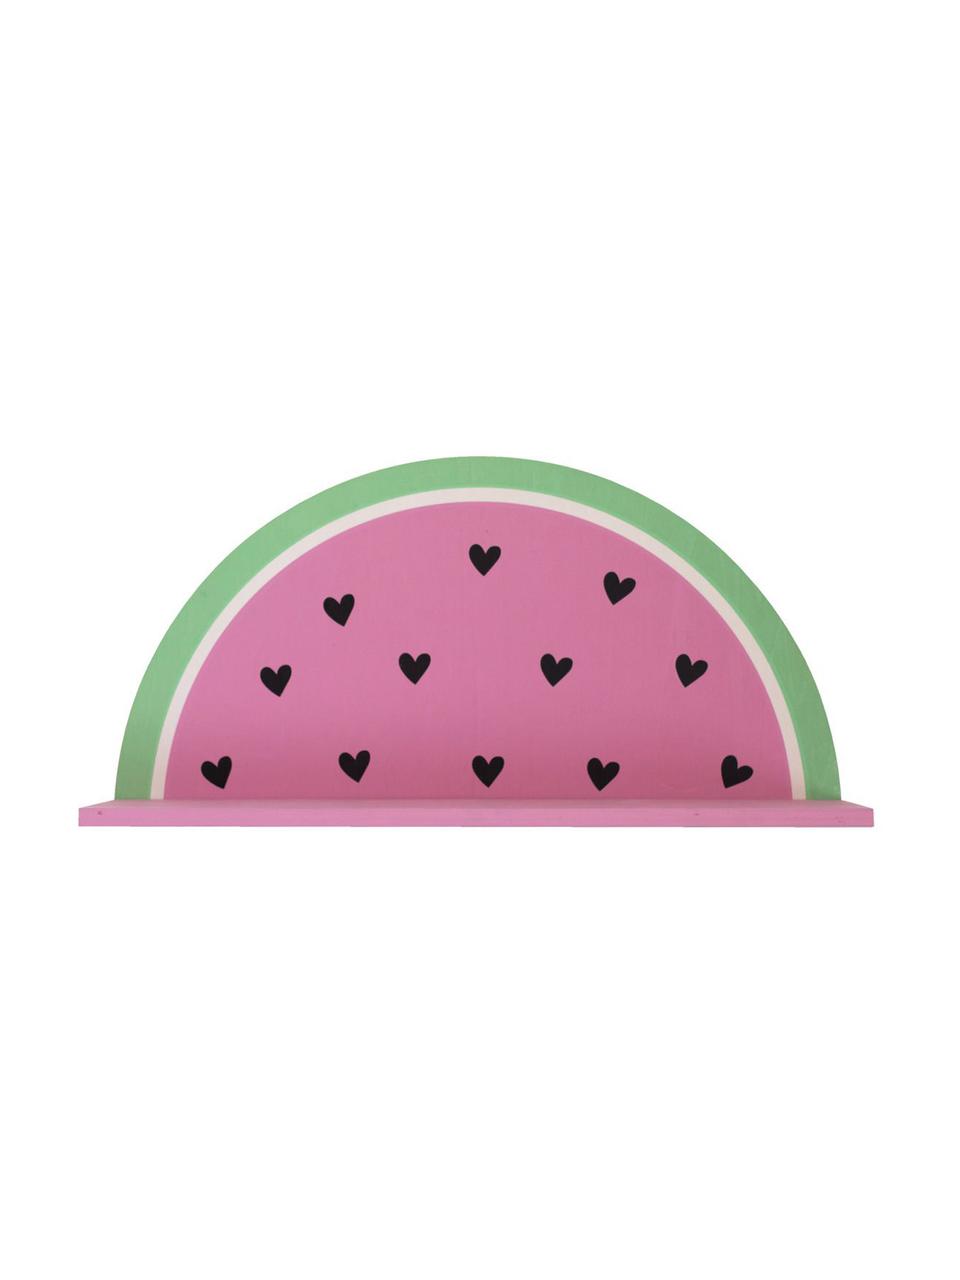 Wandregal Watermelon, Holz, beschichtet, Pink, Grün, Schwarz, Weiß, 37 x 19 cm